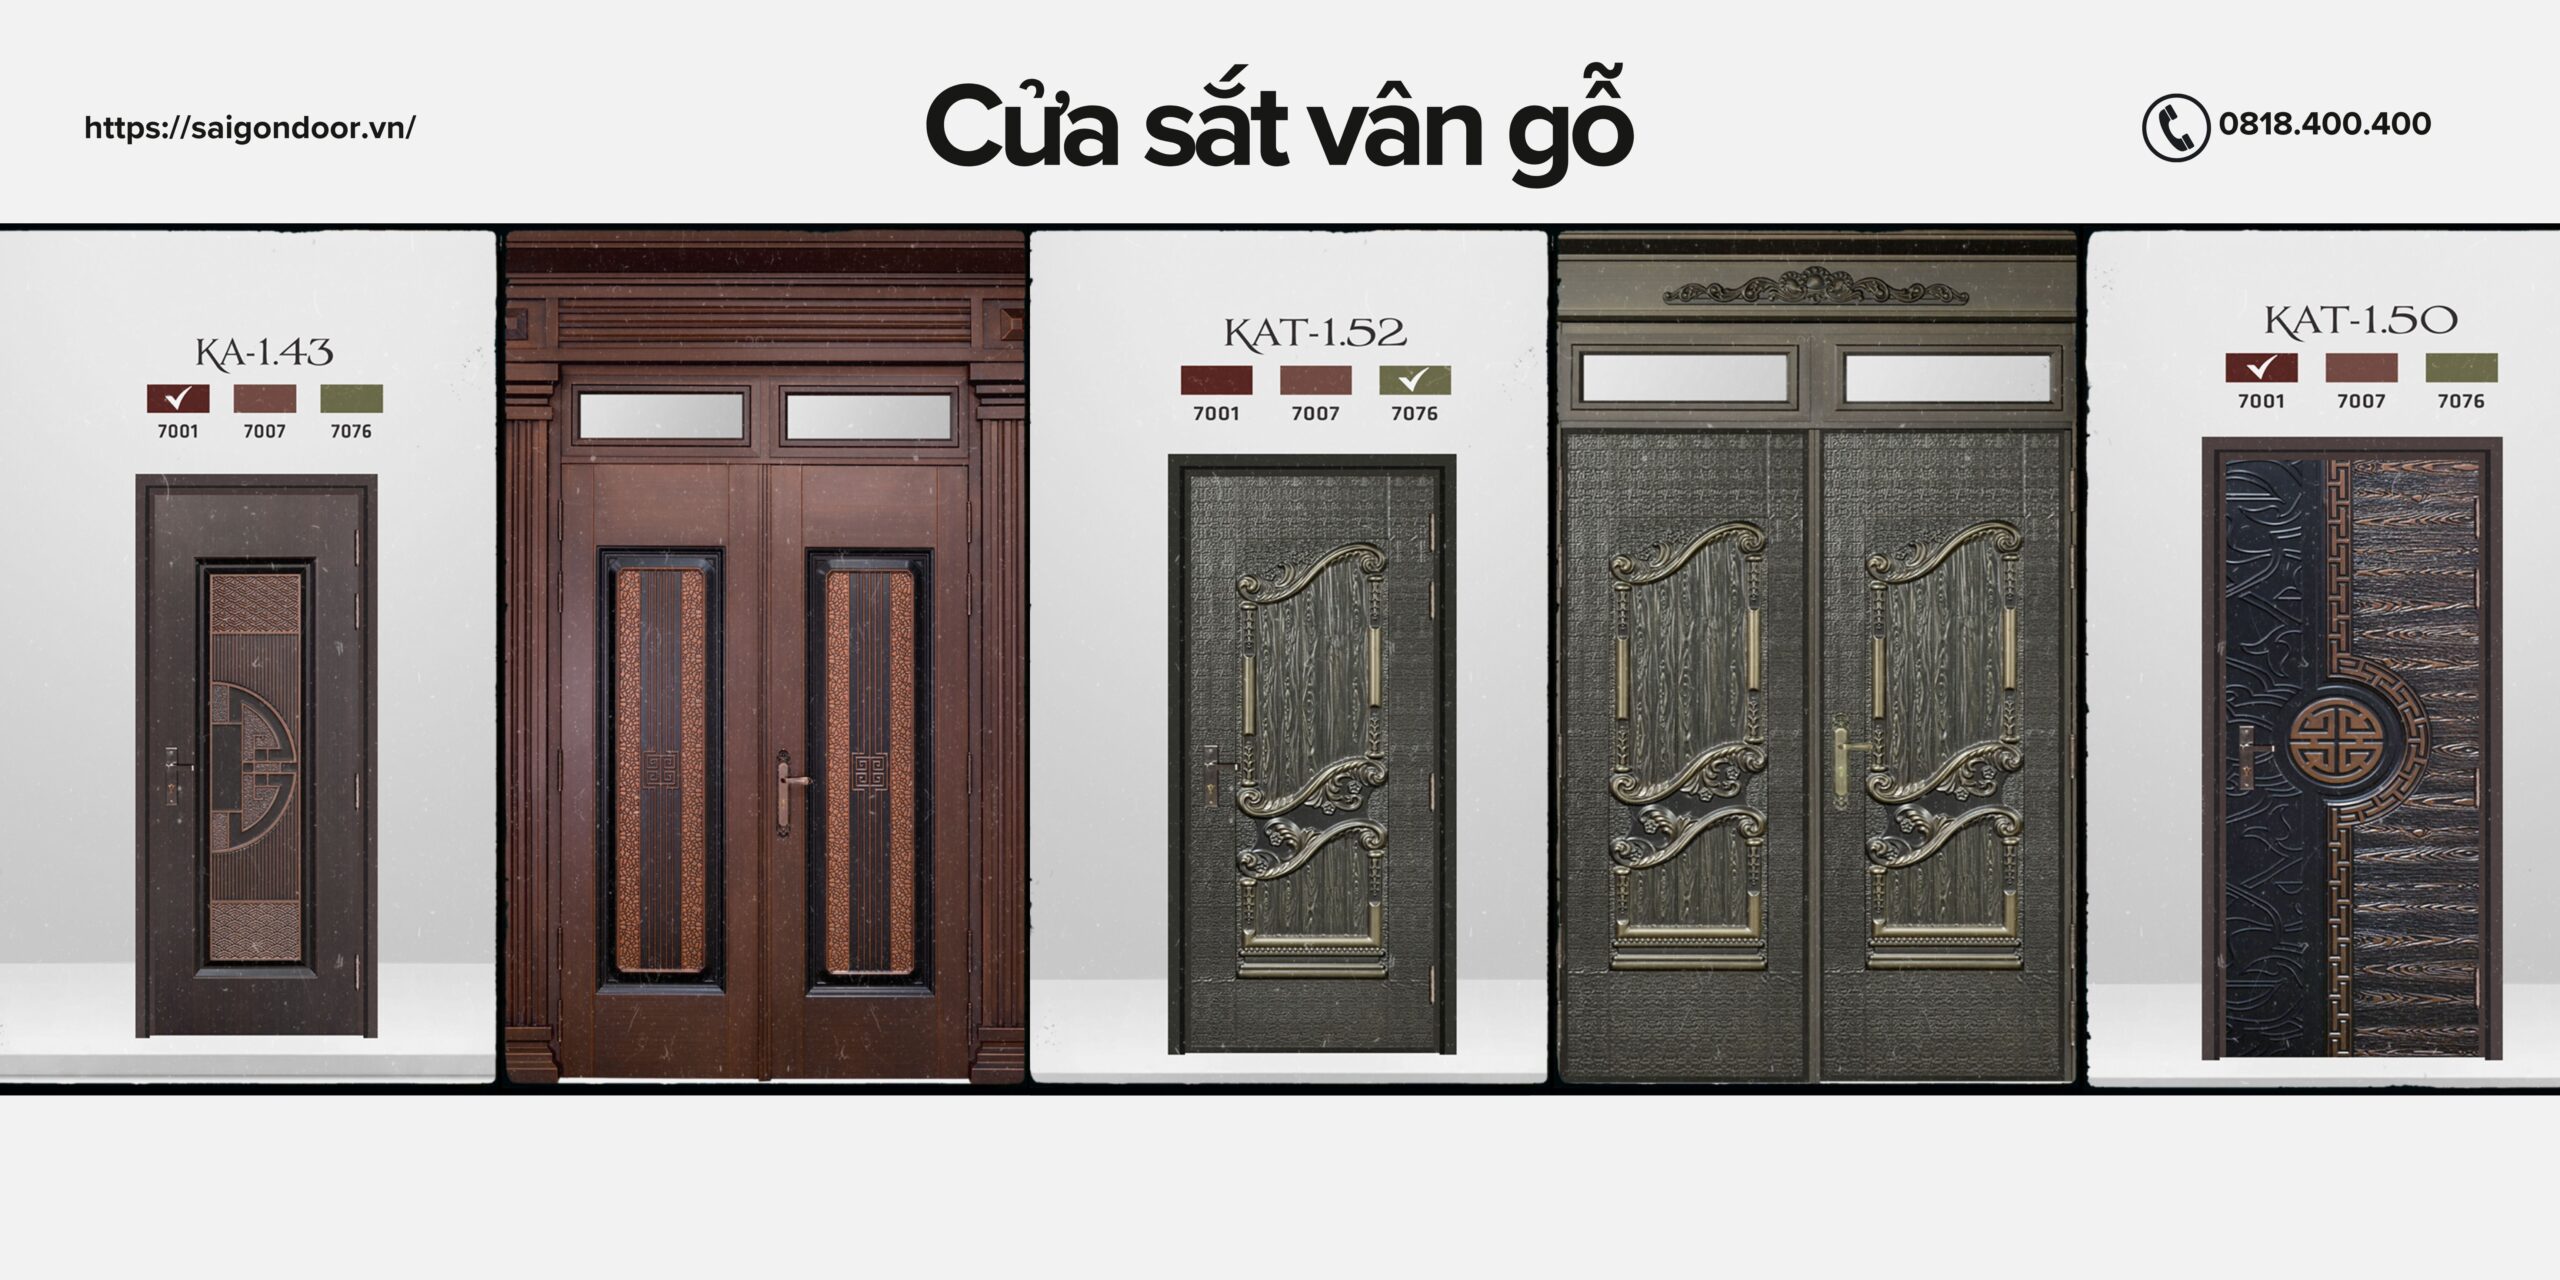 Sài Gòn Door cung cấp các sản phẩm cửa chất lượng 